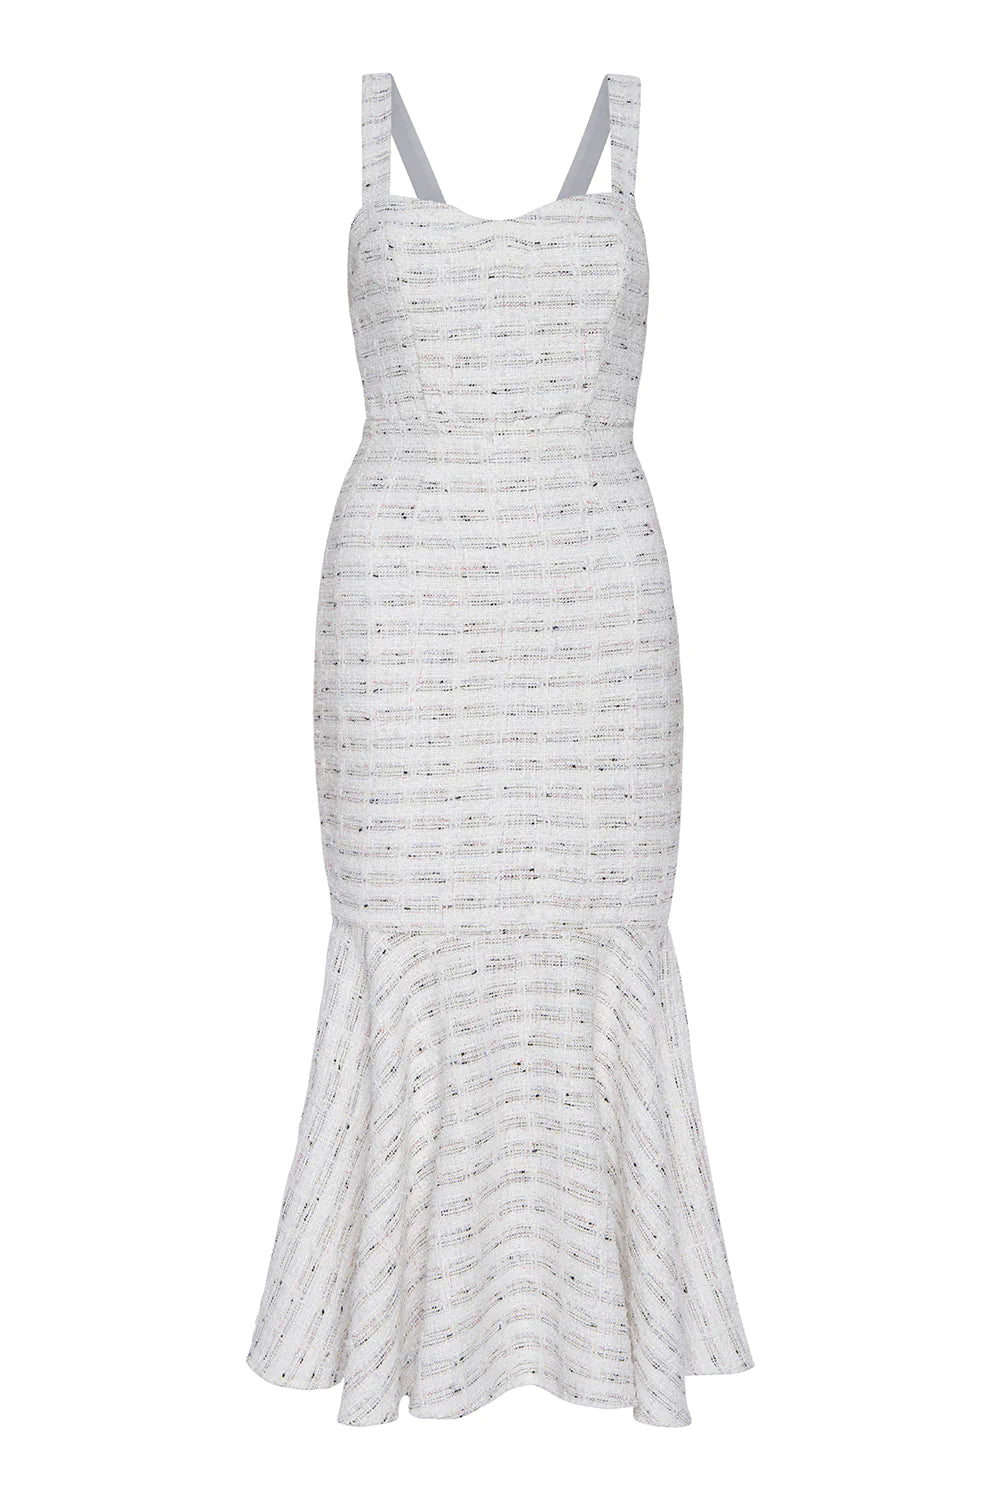 Misa Elke Tweed Midi Dress in Winter White